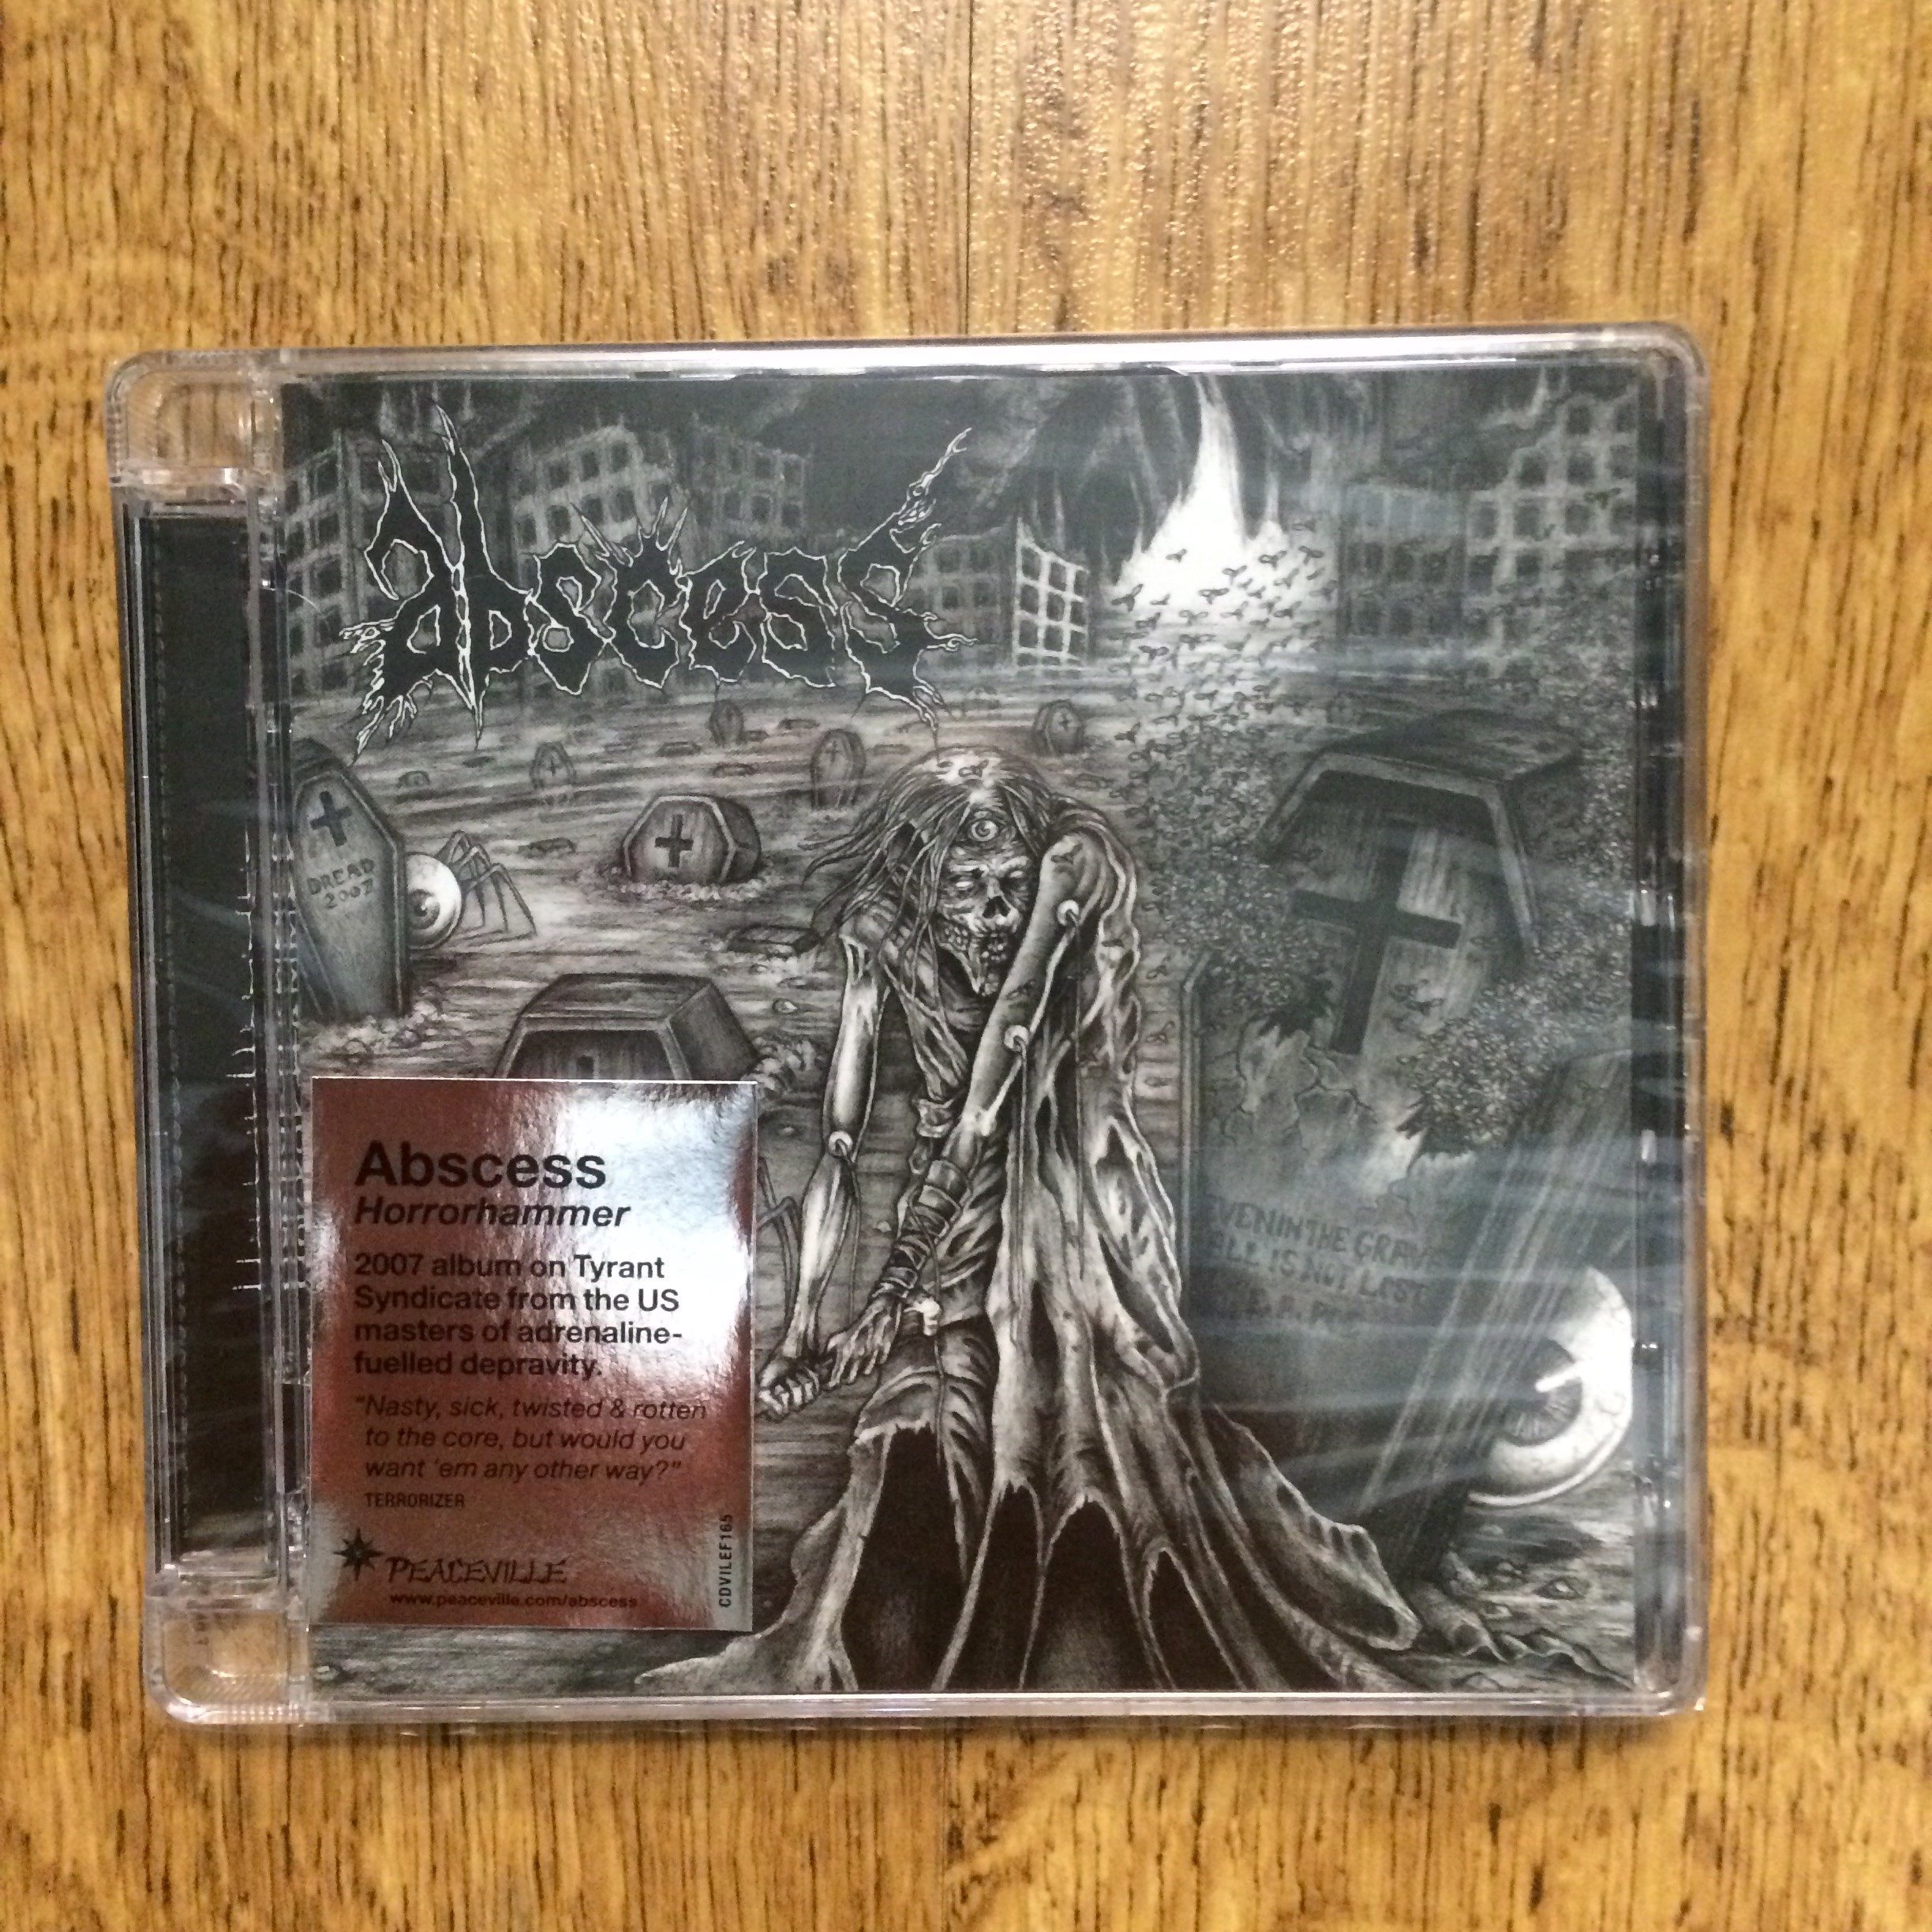 Photo of the Abscess - "Horrorhammer" CD